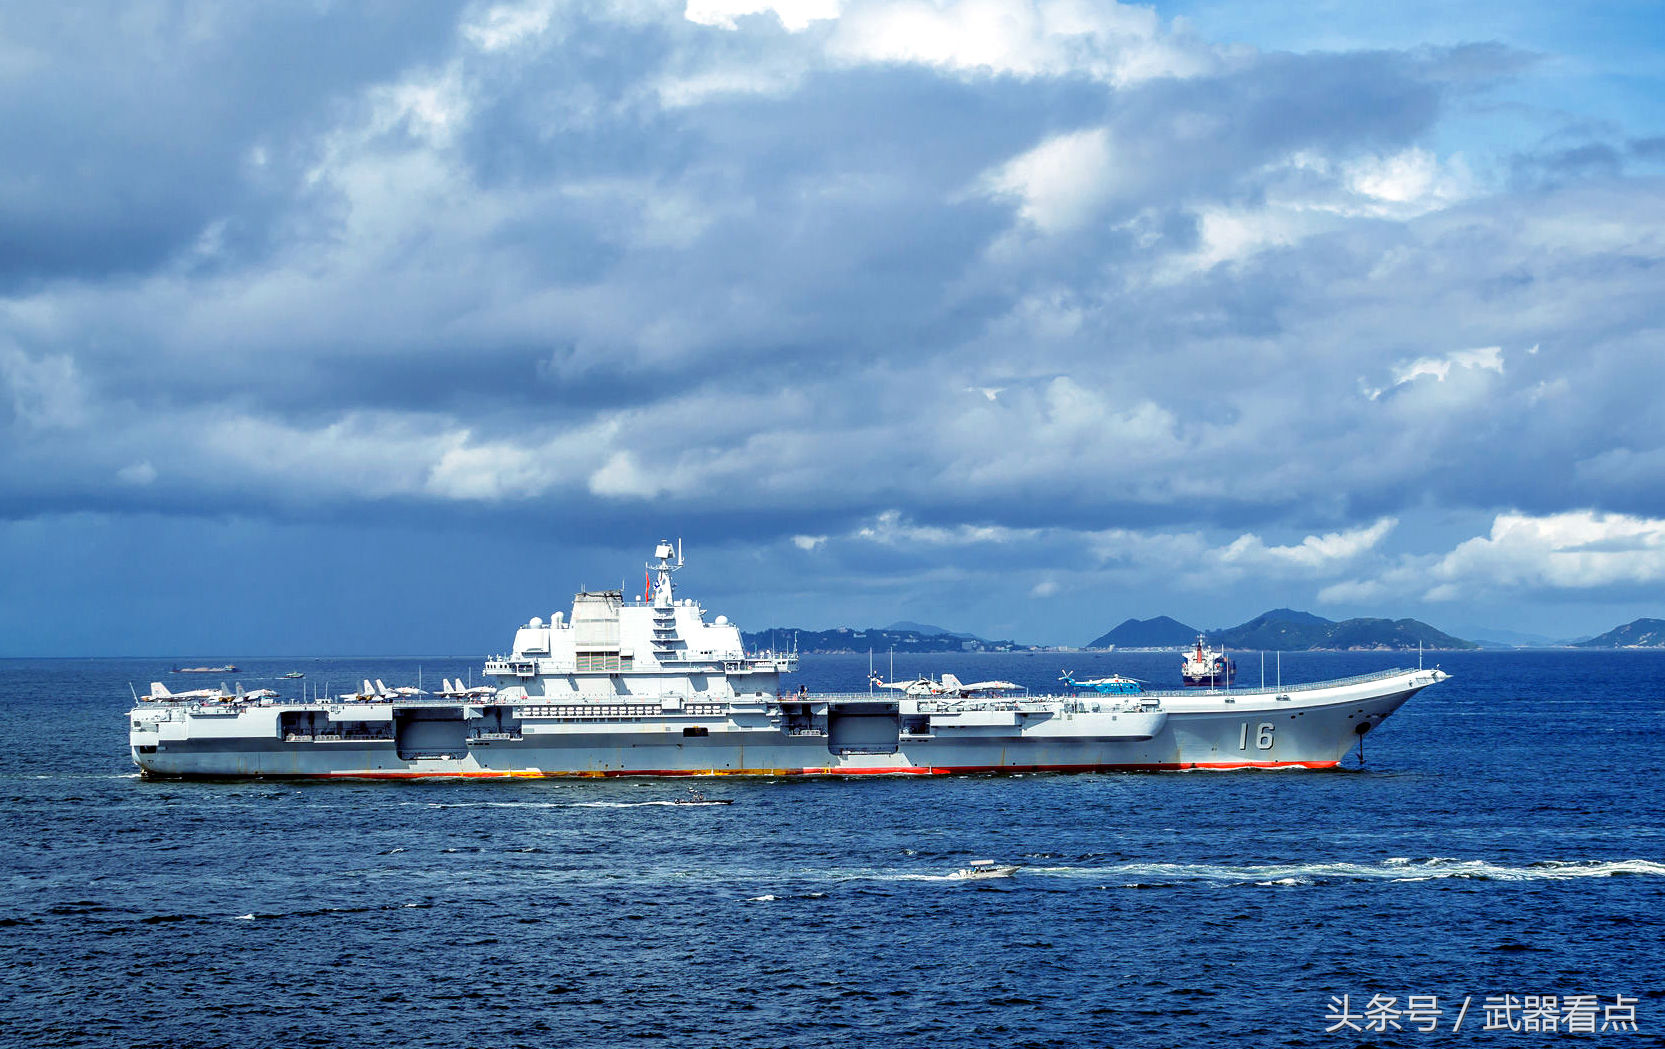 2005年4月26日,开始由中国海军继续建造改进.